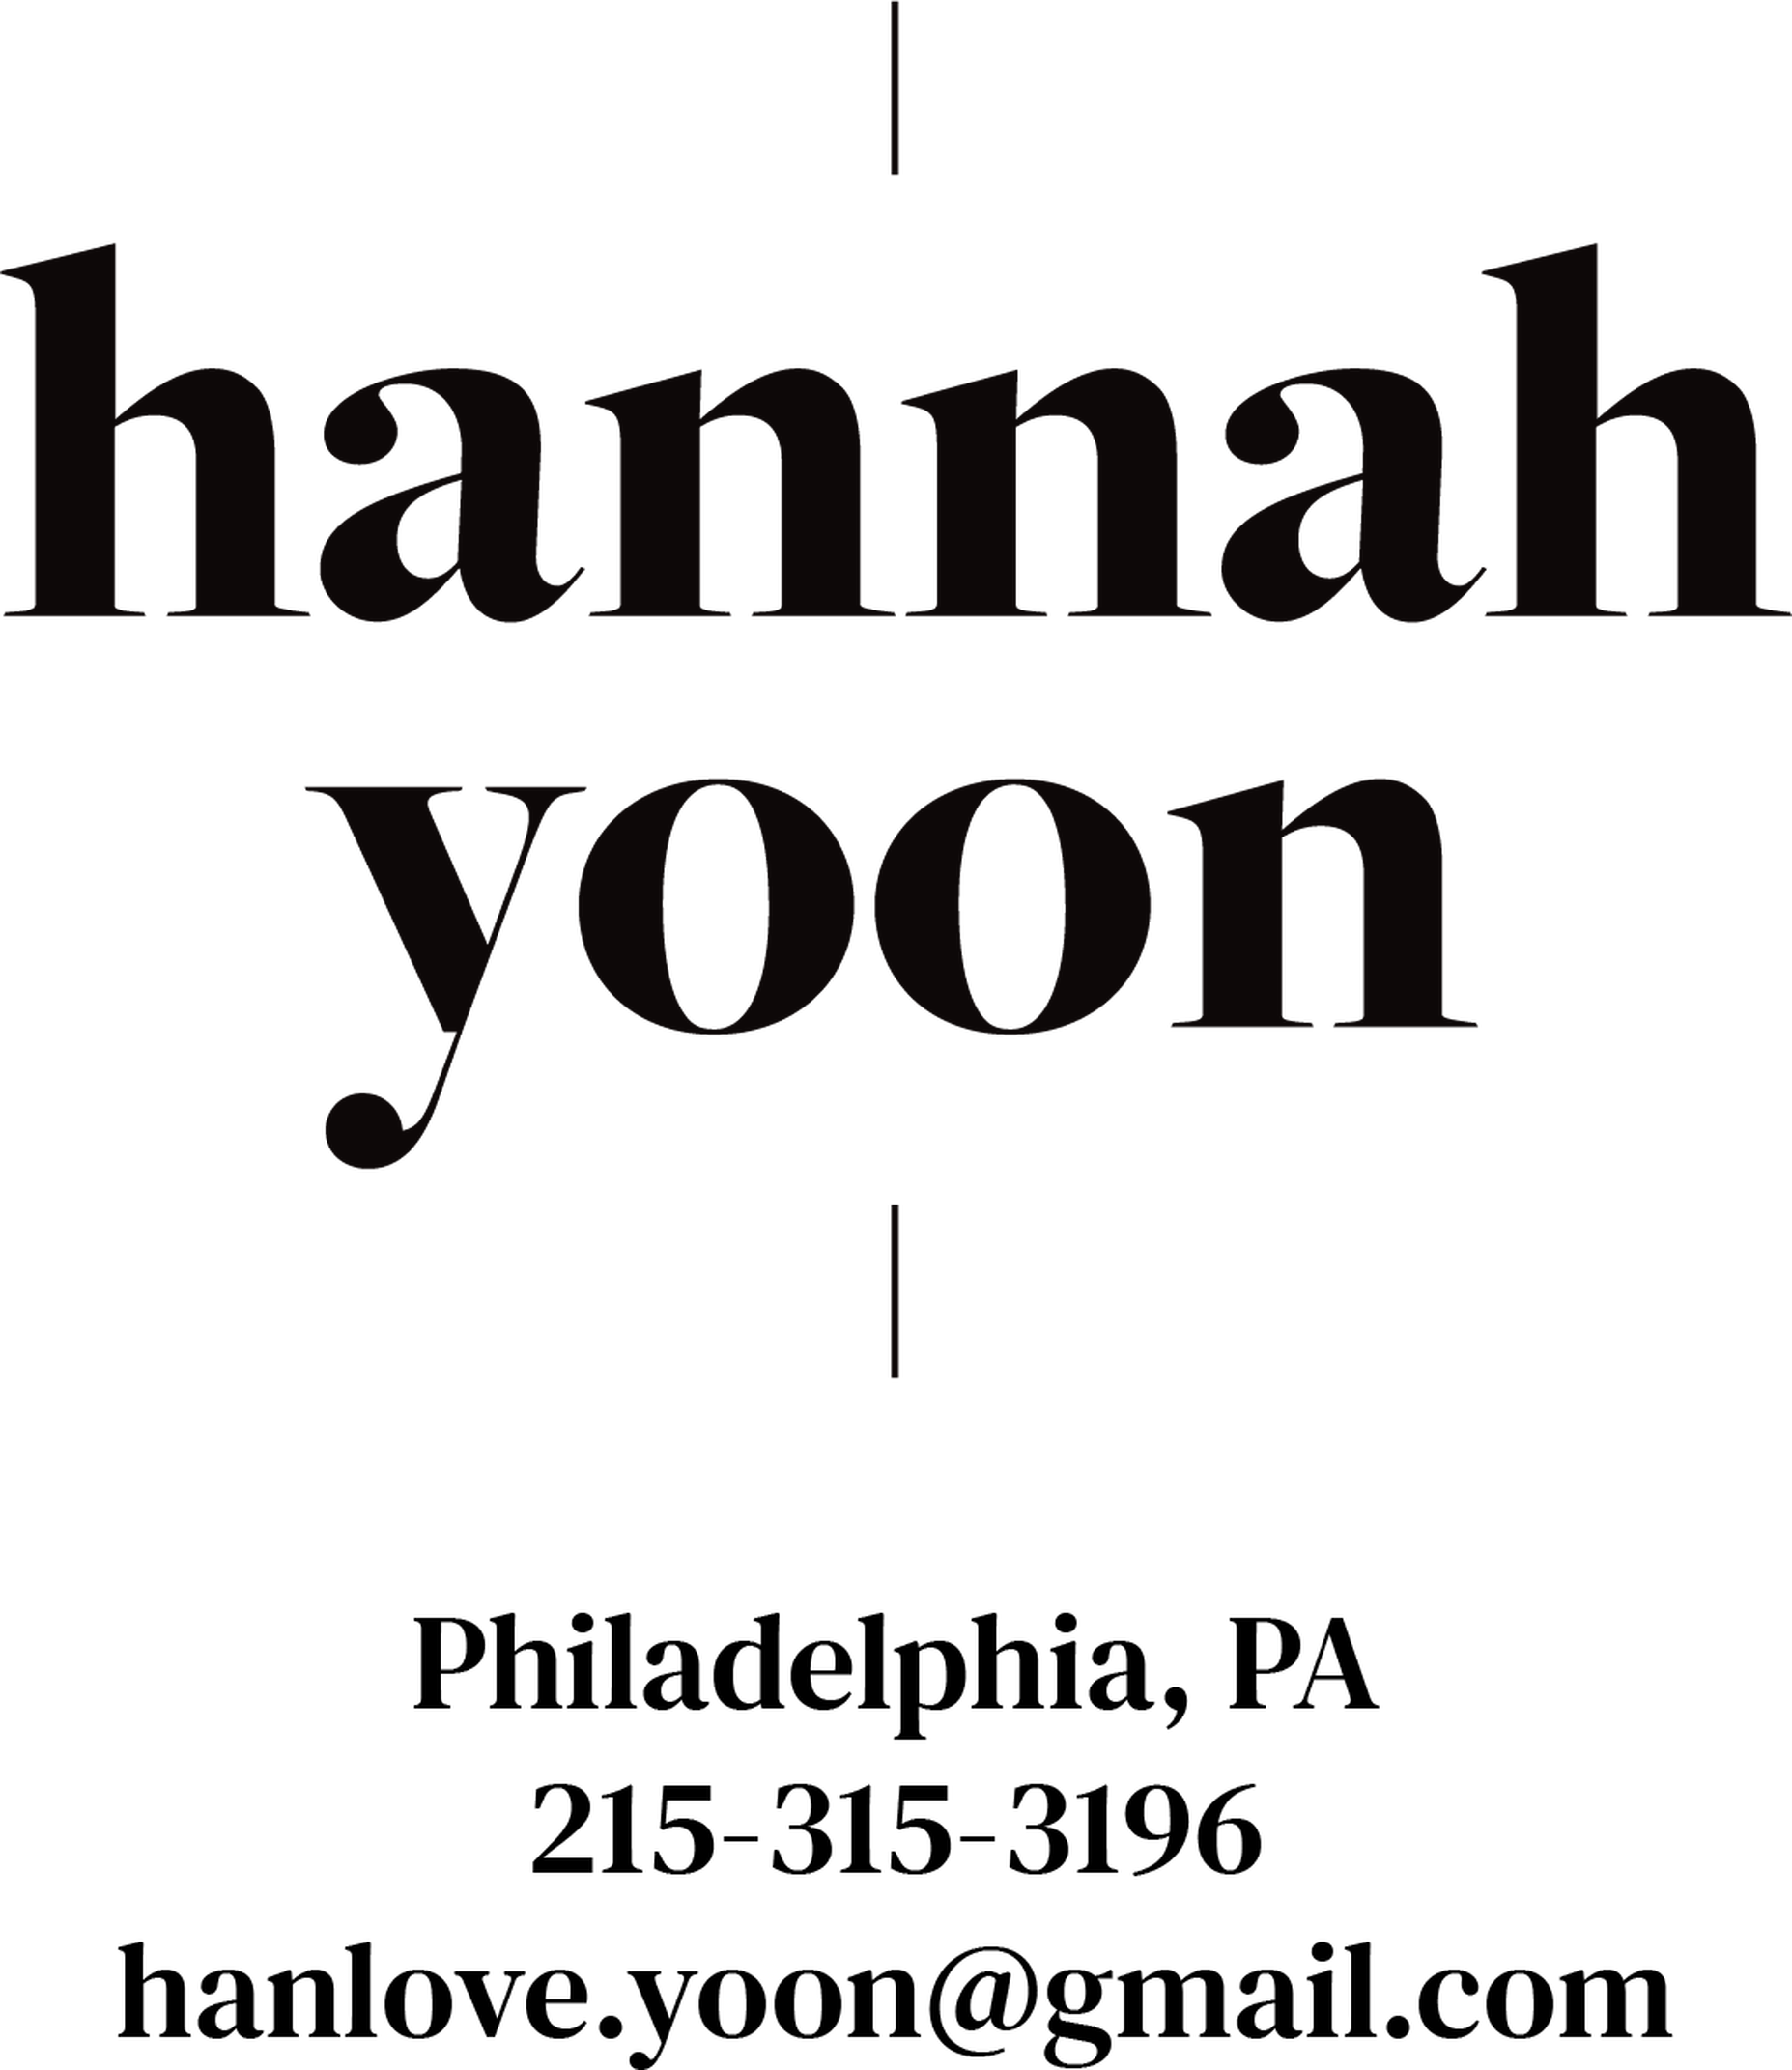 Hannah Yoon